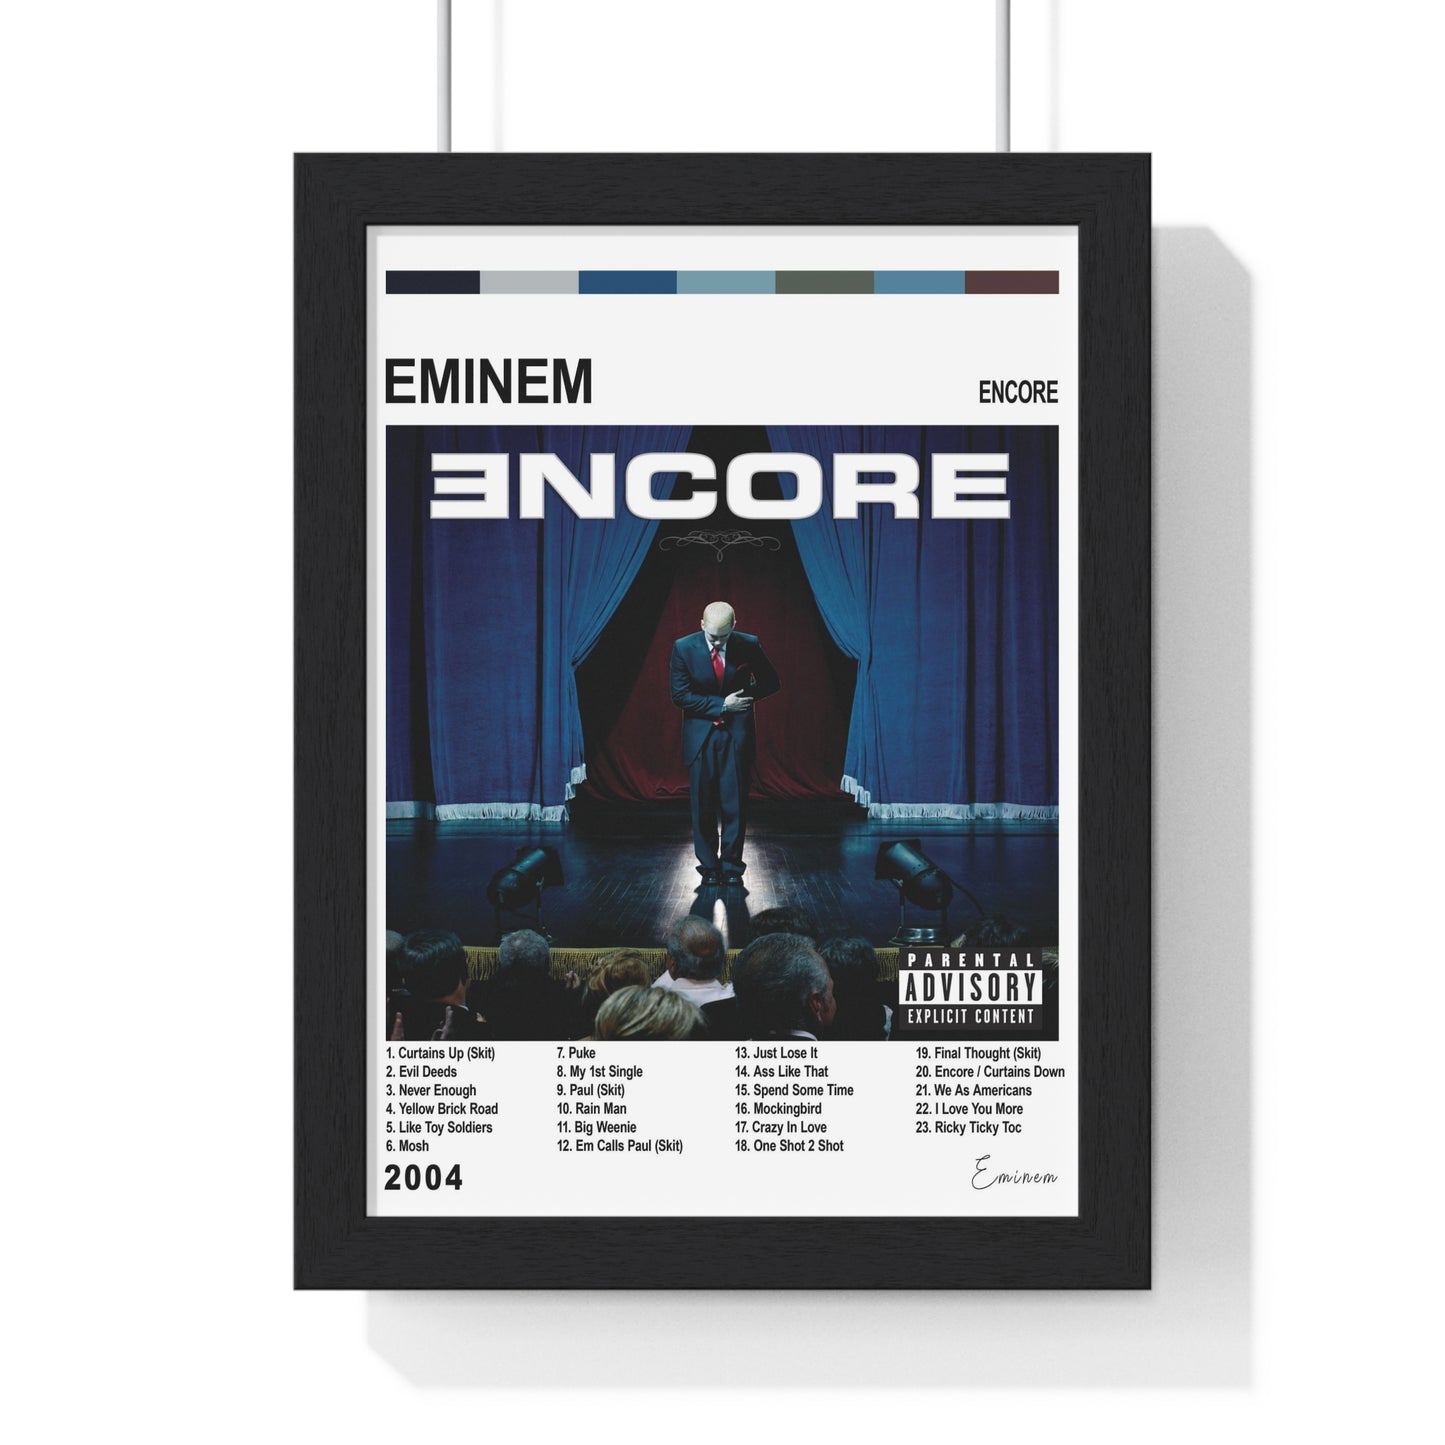 Eminem Album Cover Poster